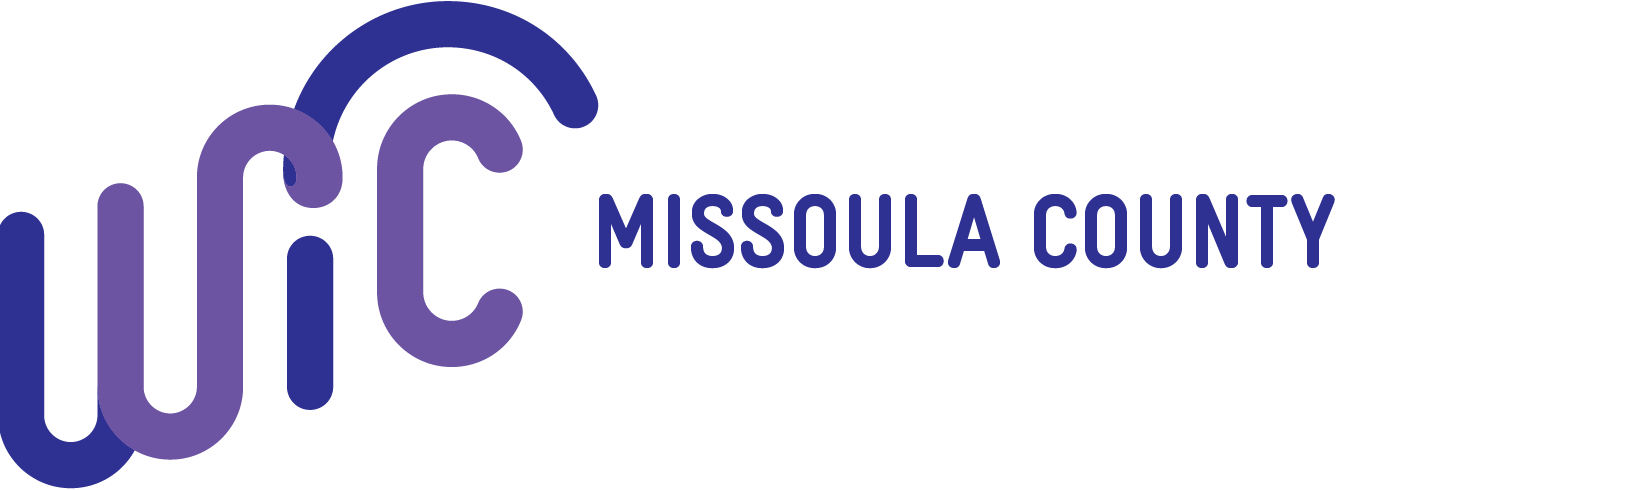 WIC Missoula County Logo